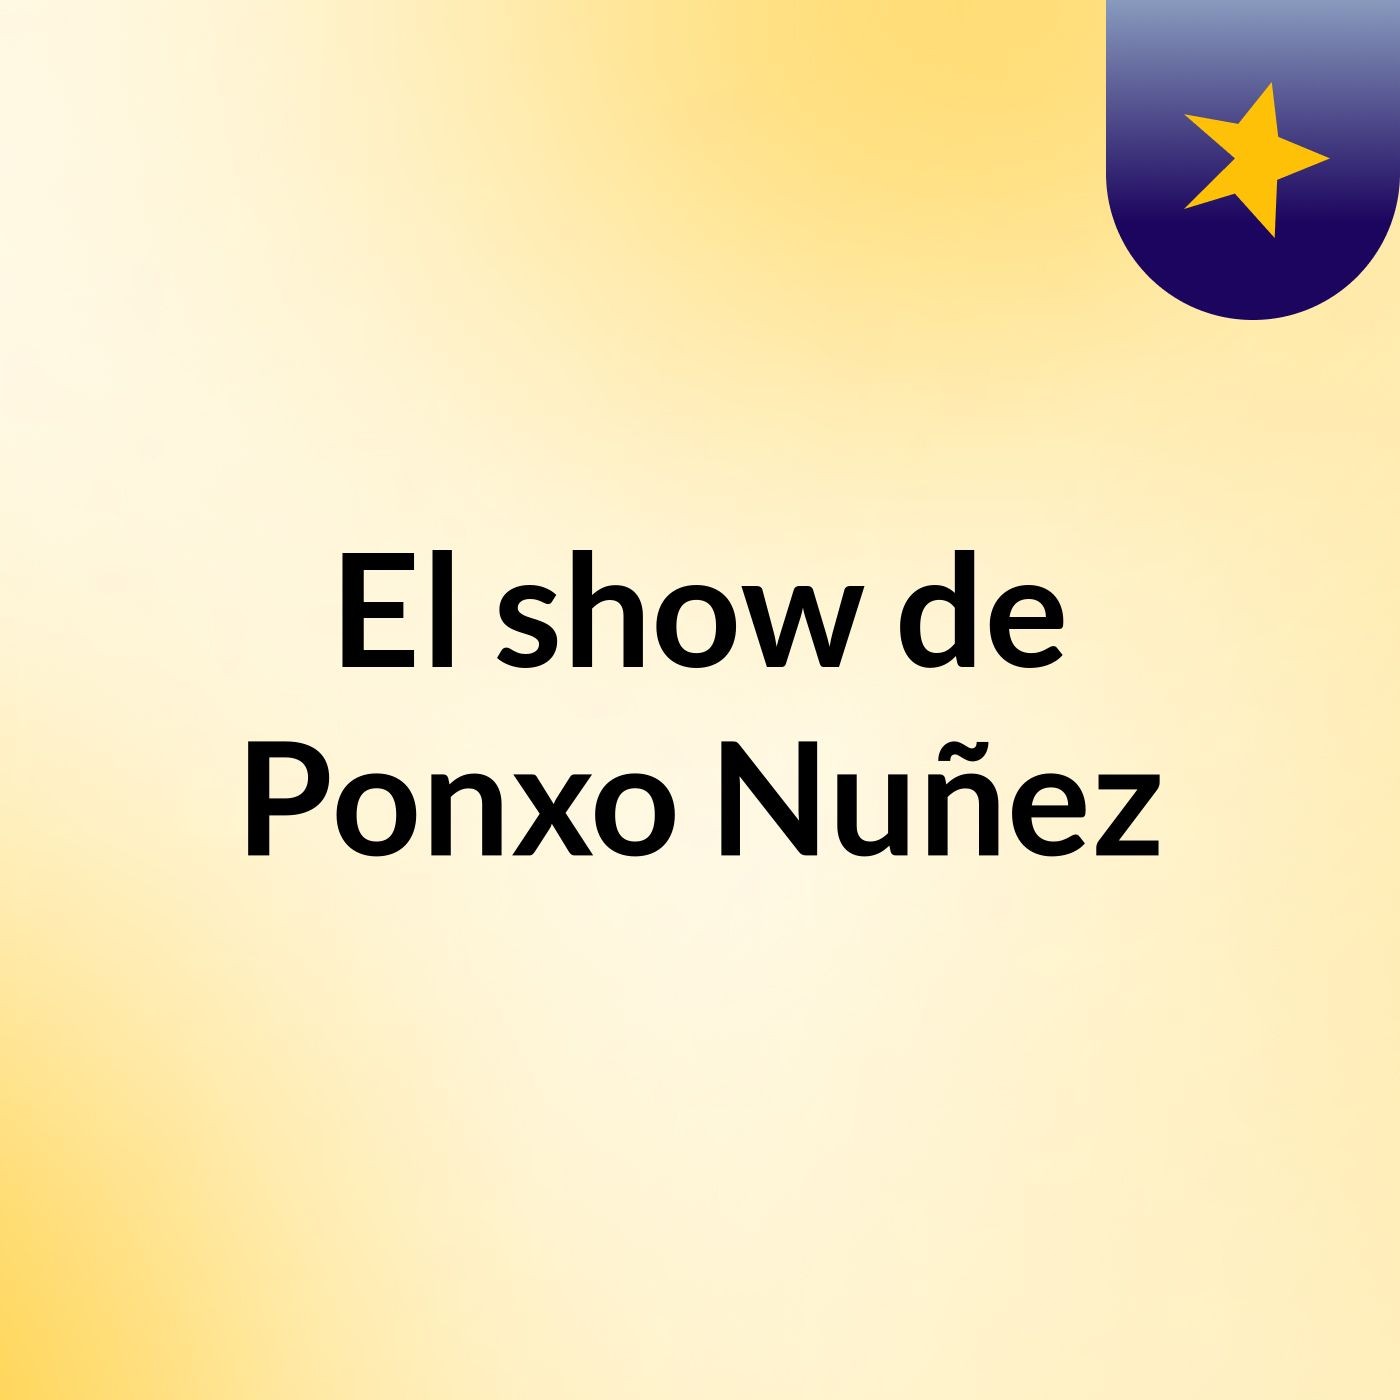 El show de Ponxo Nuñez